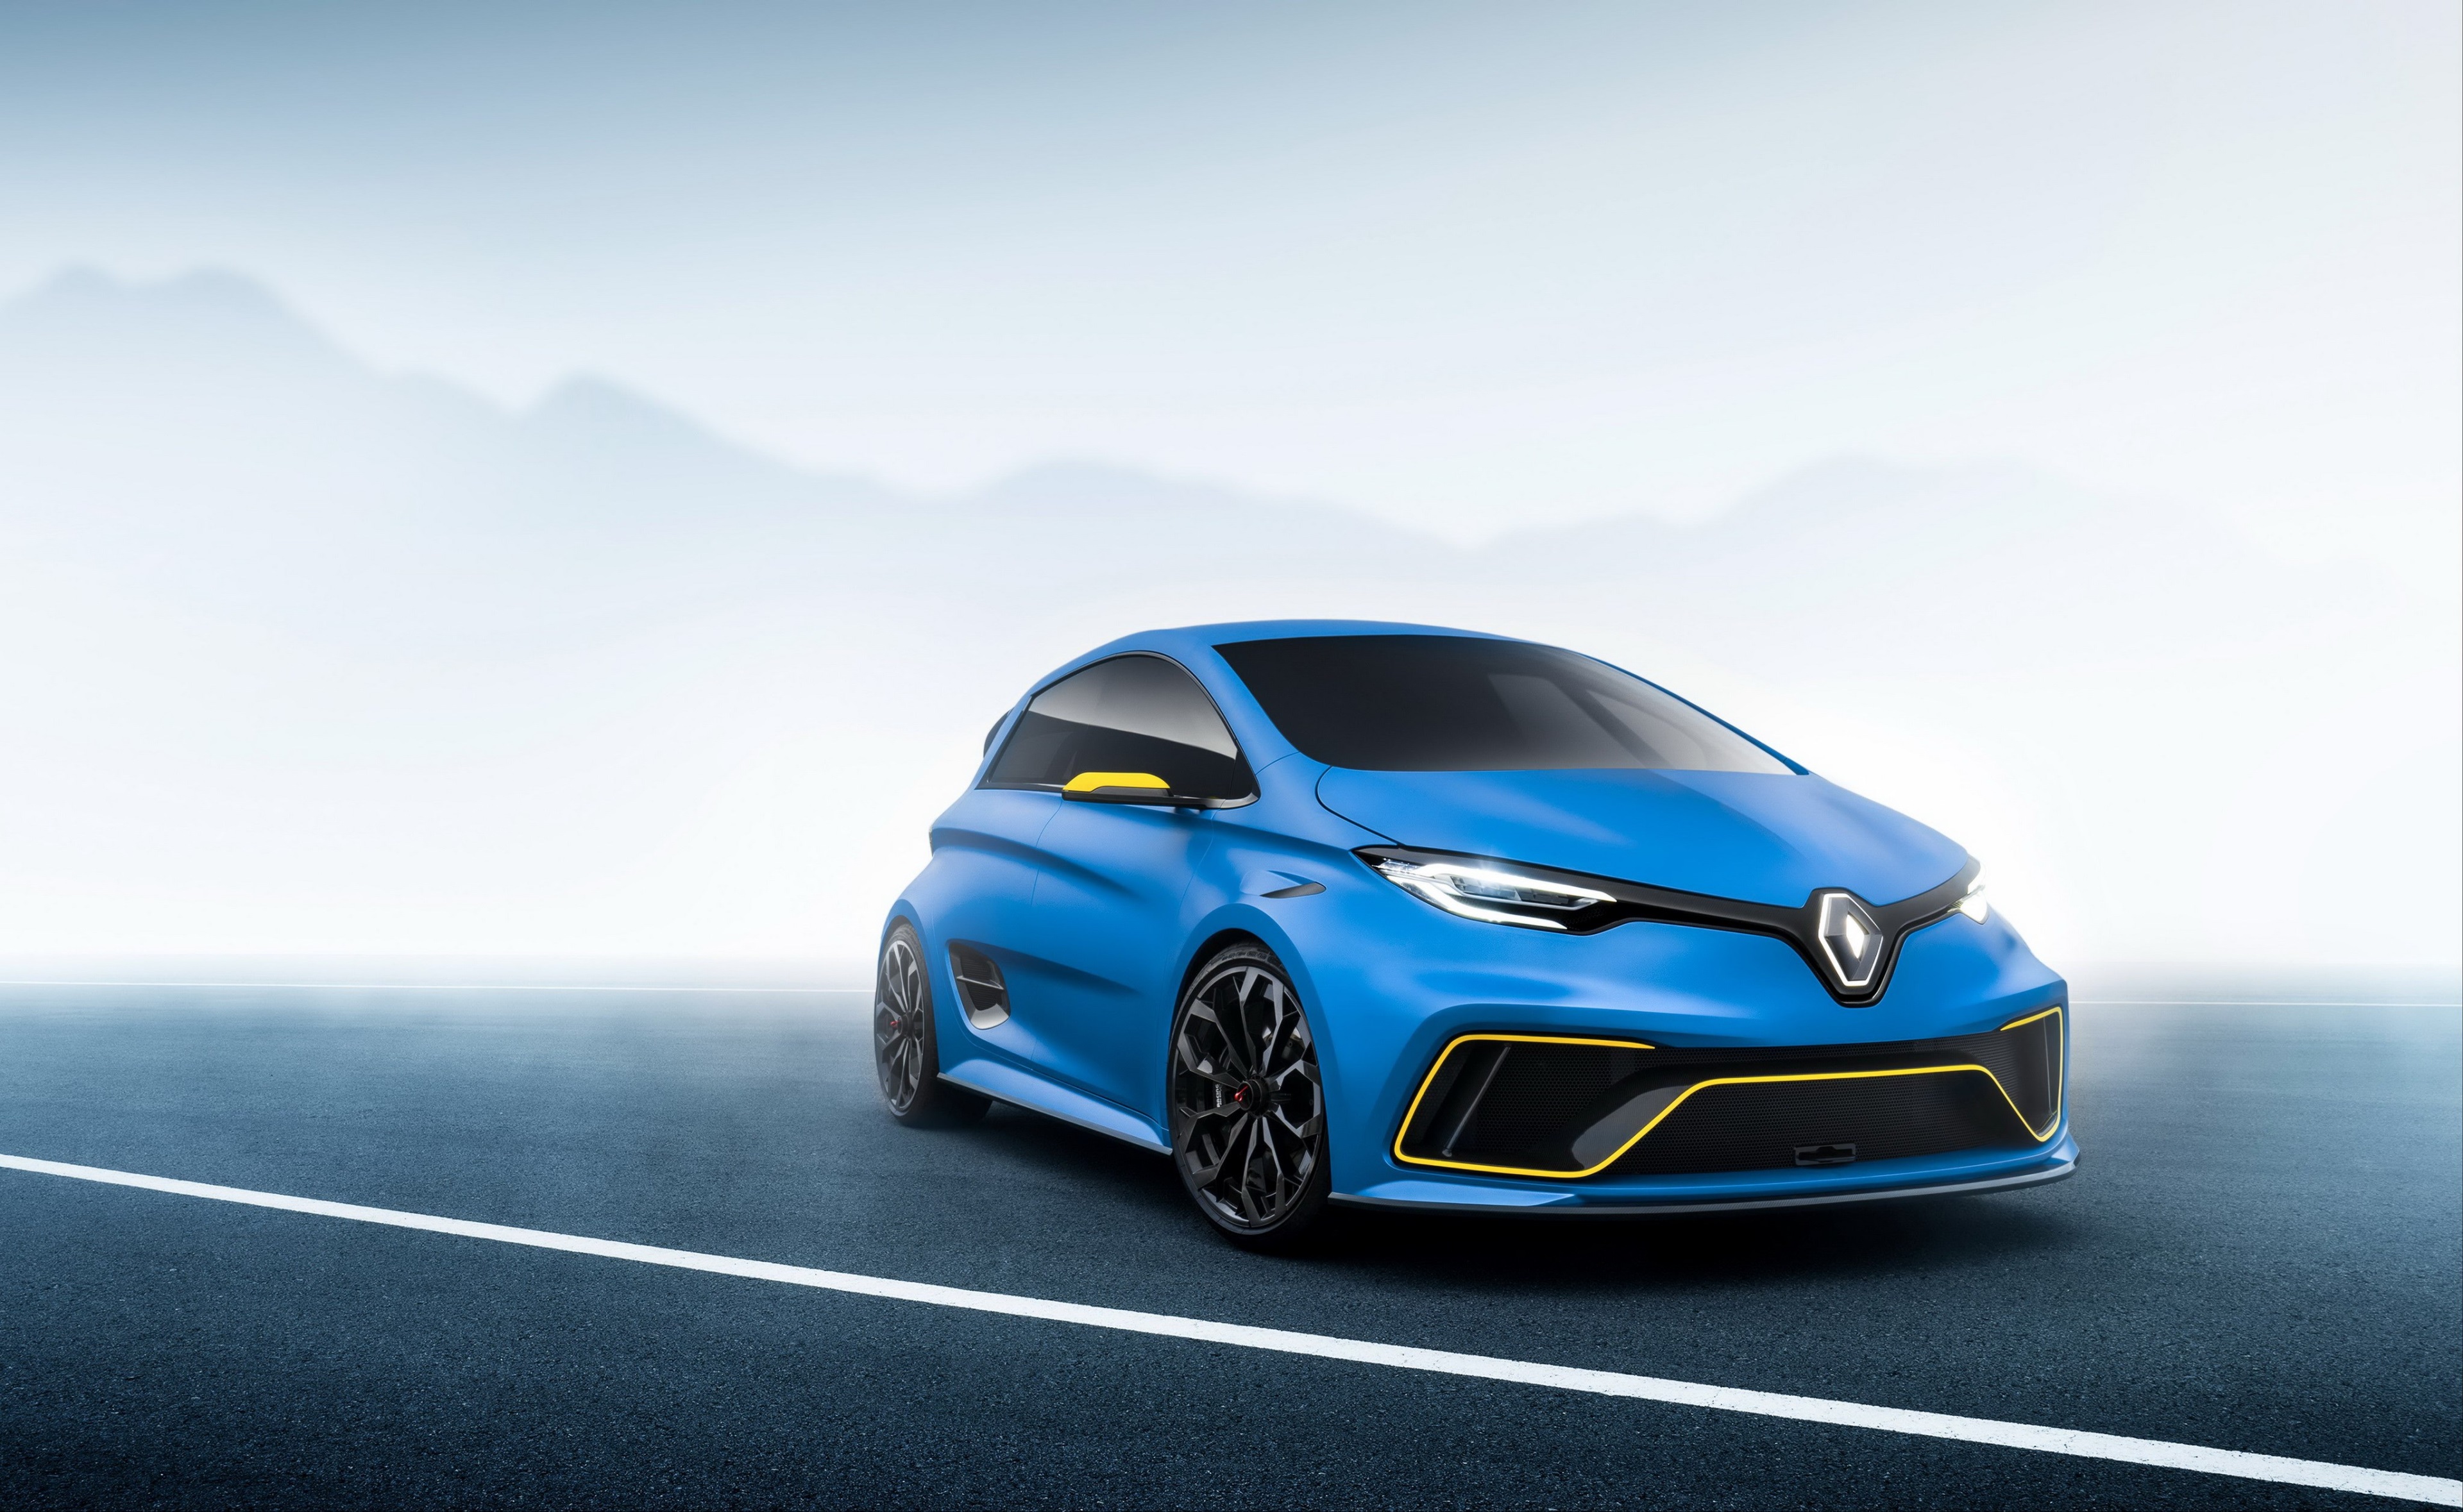 Renault Zoe Sport , HD Wallpaper & Backgrounds